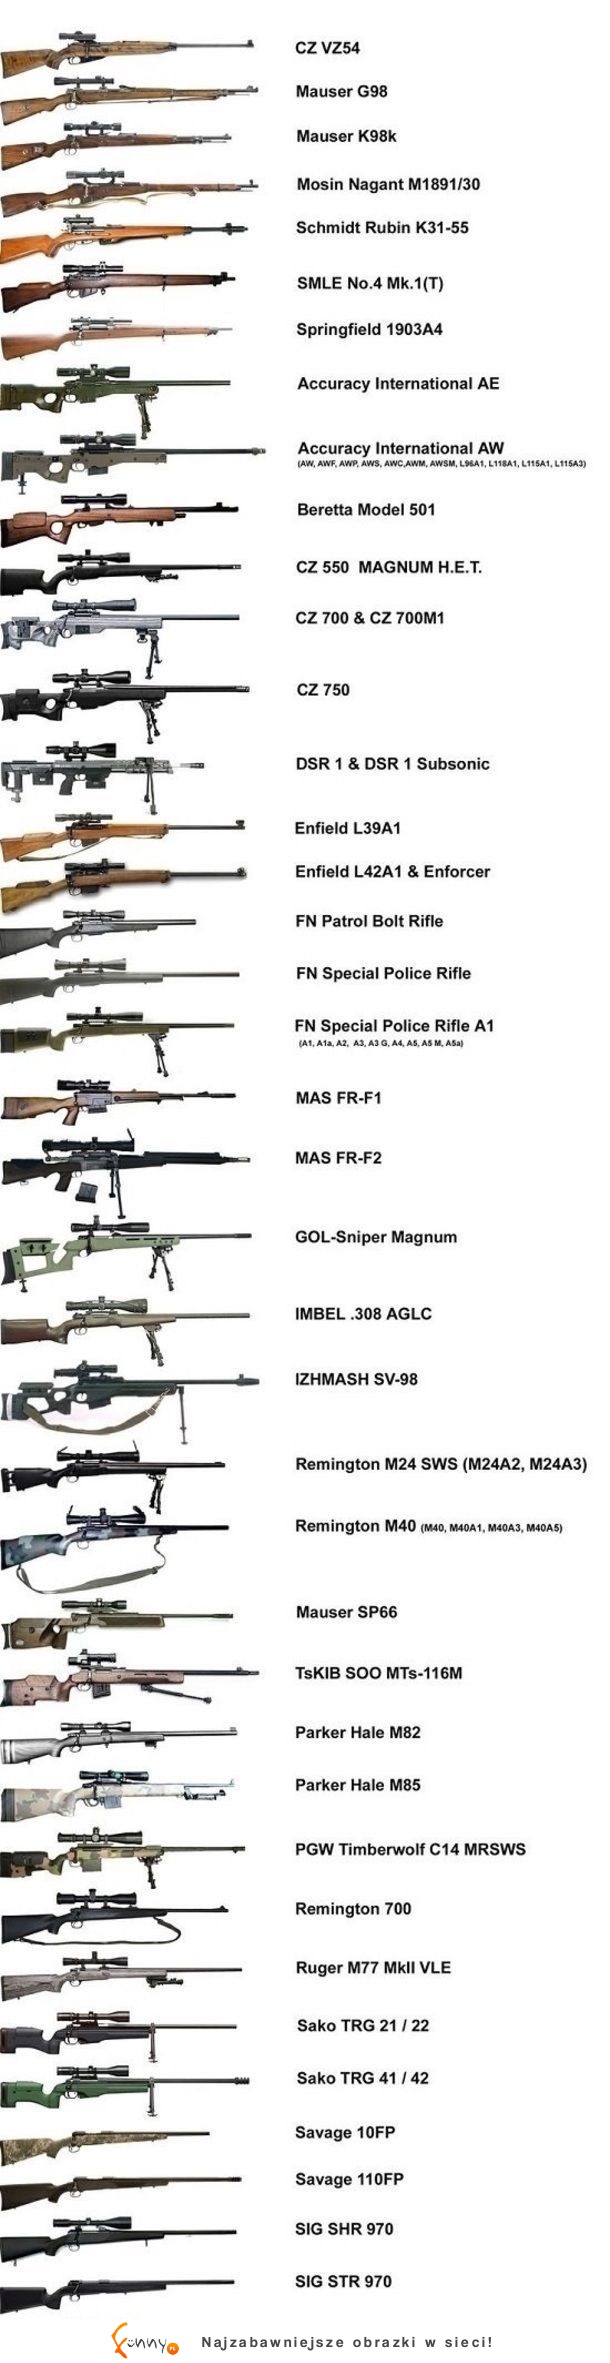 Jaką broń wybierasz? ;-)